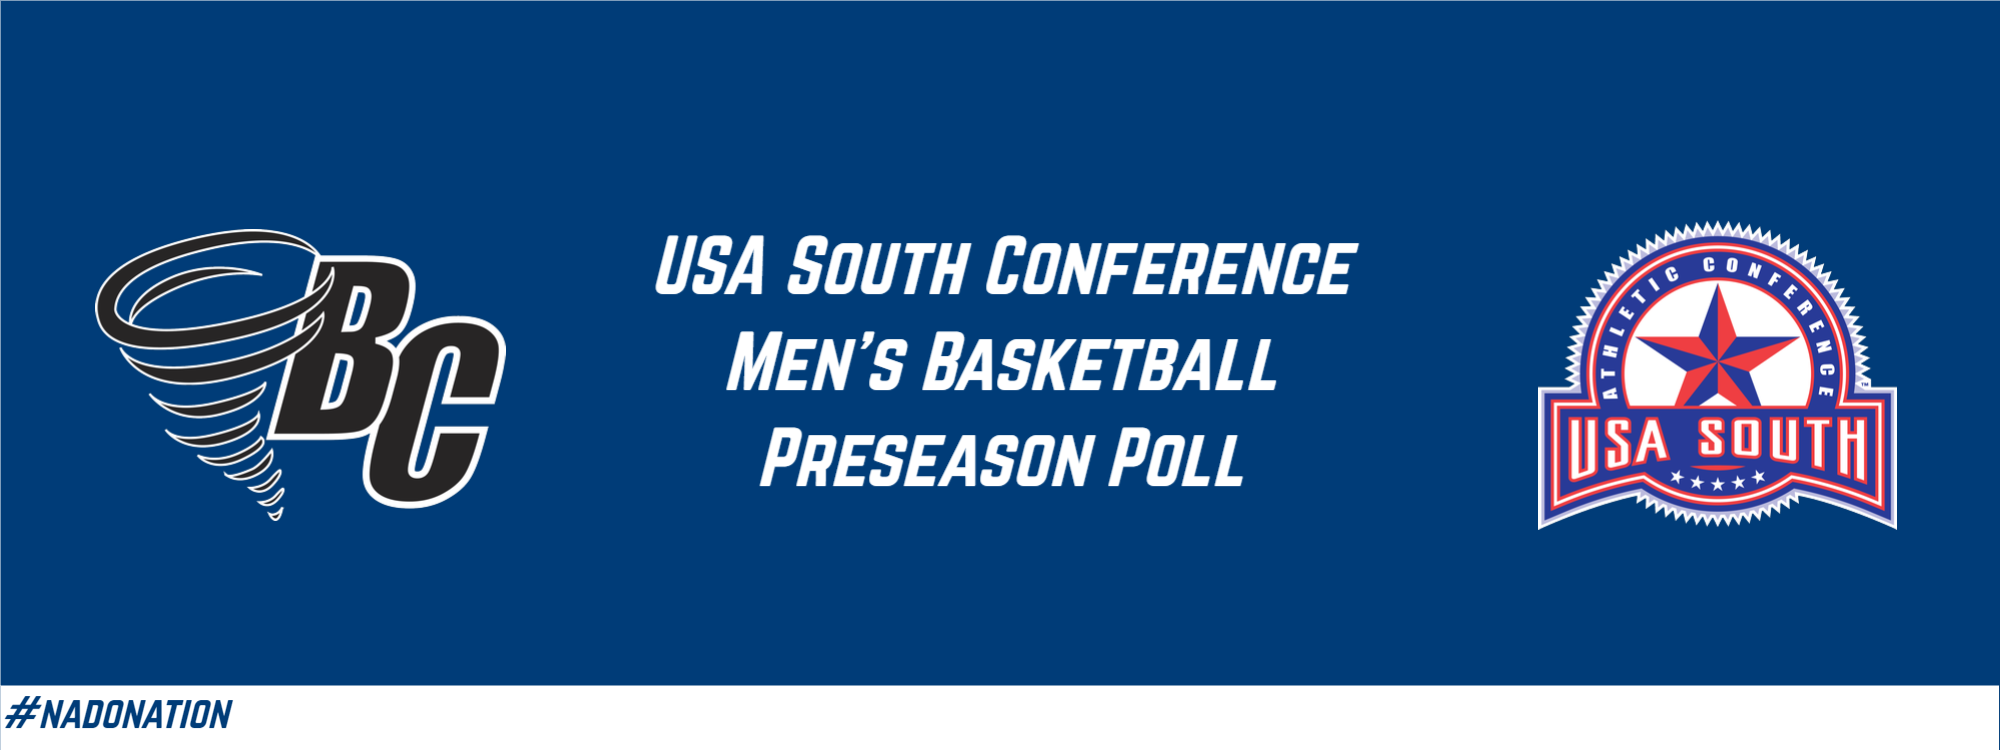 USA South Releases Men’s Basketball Preseason Poll